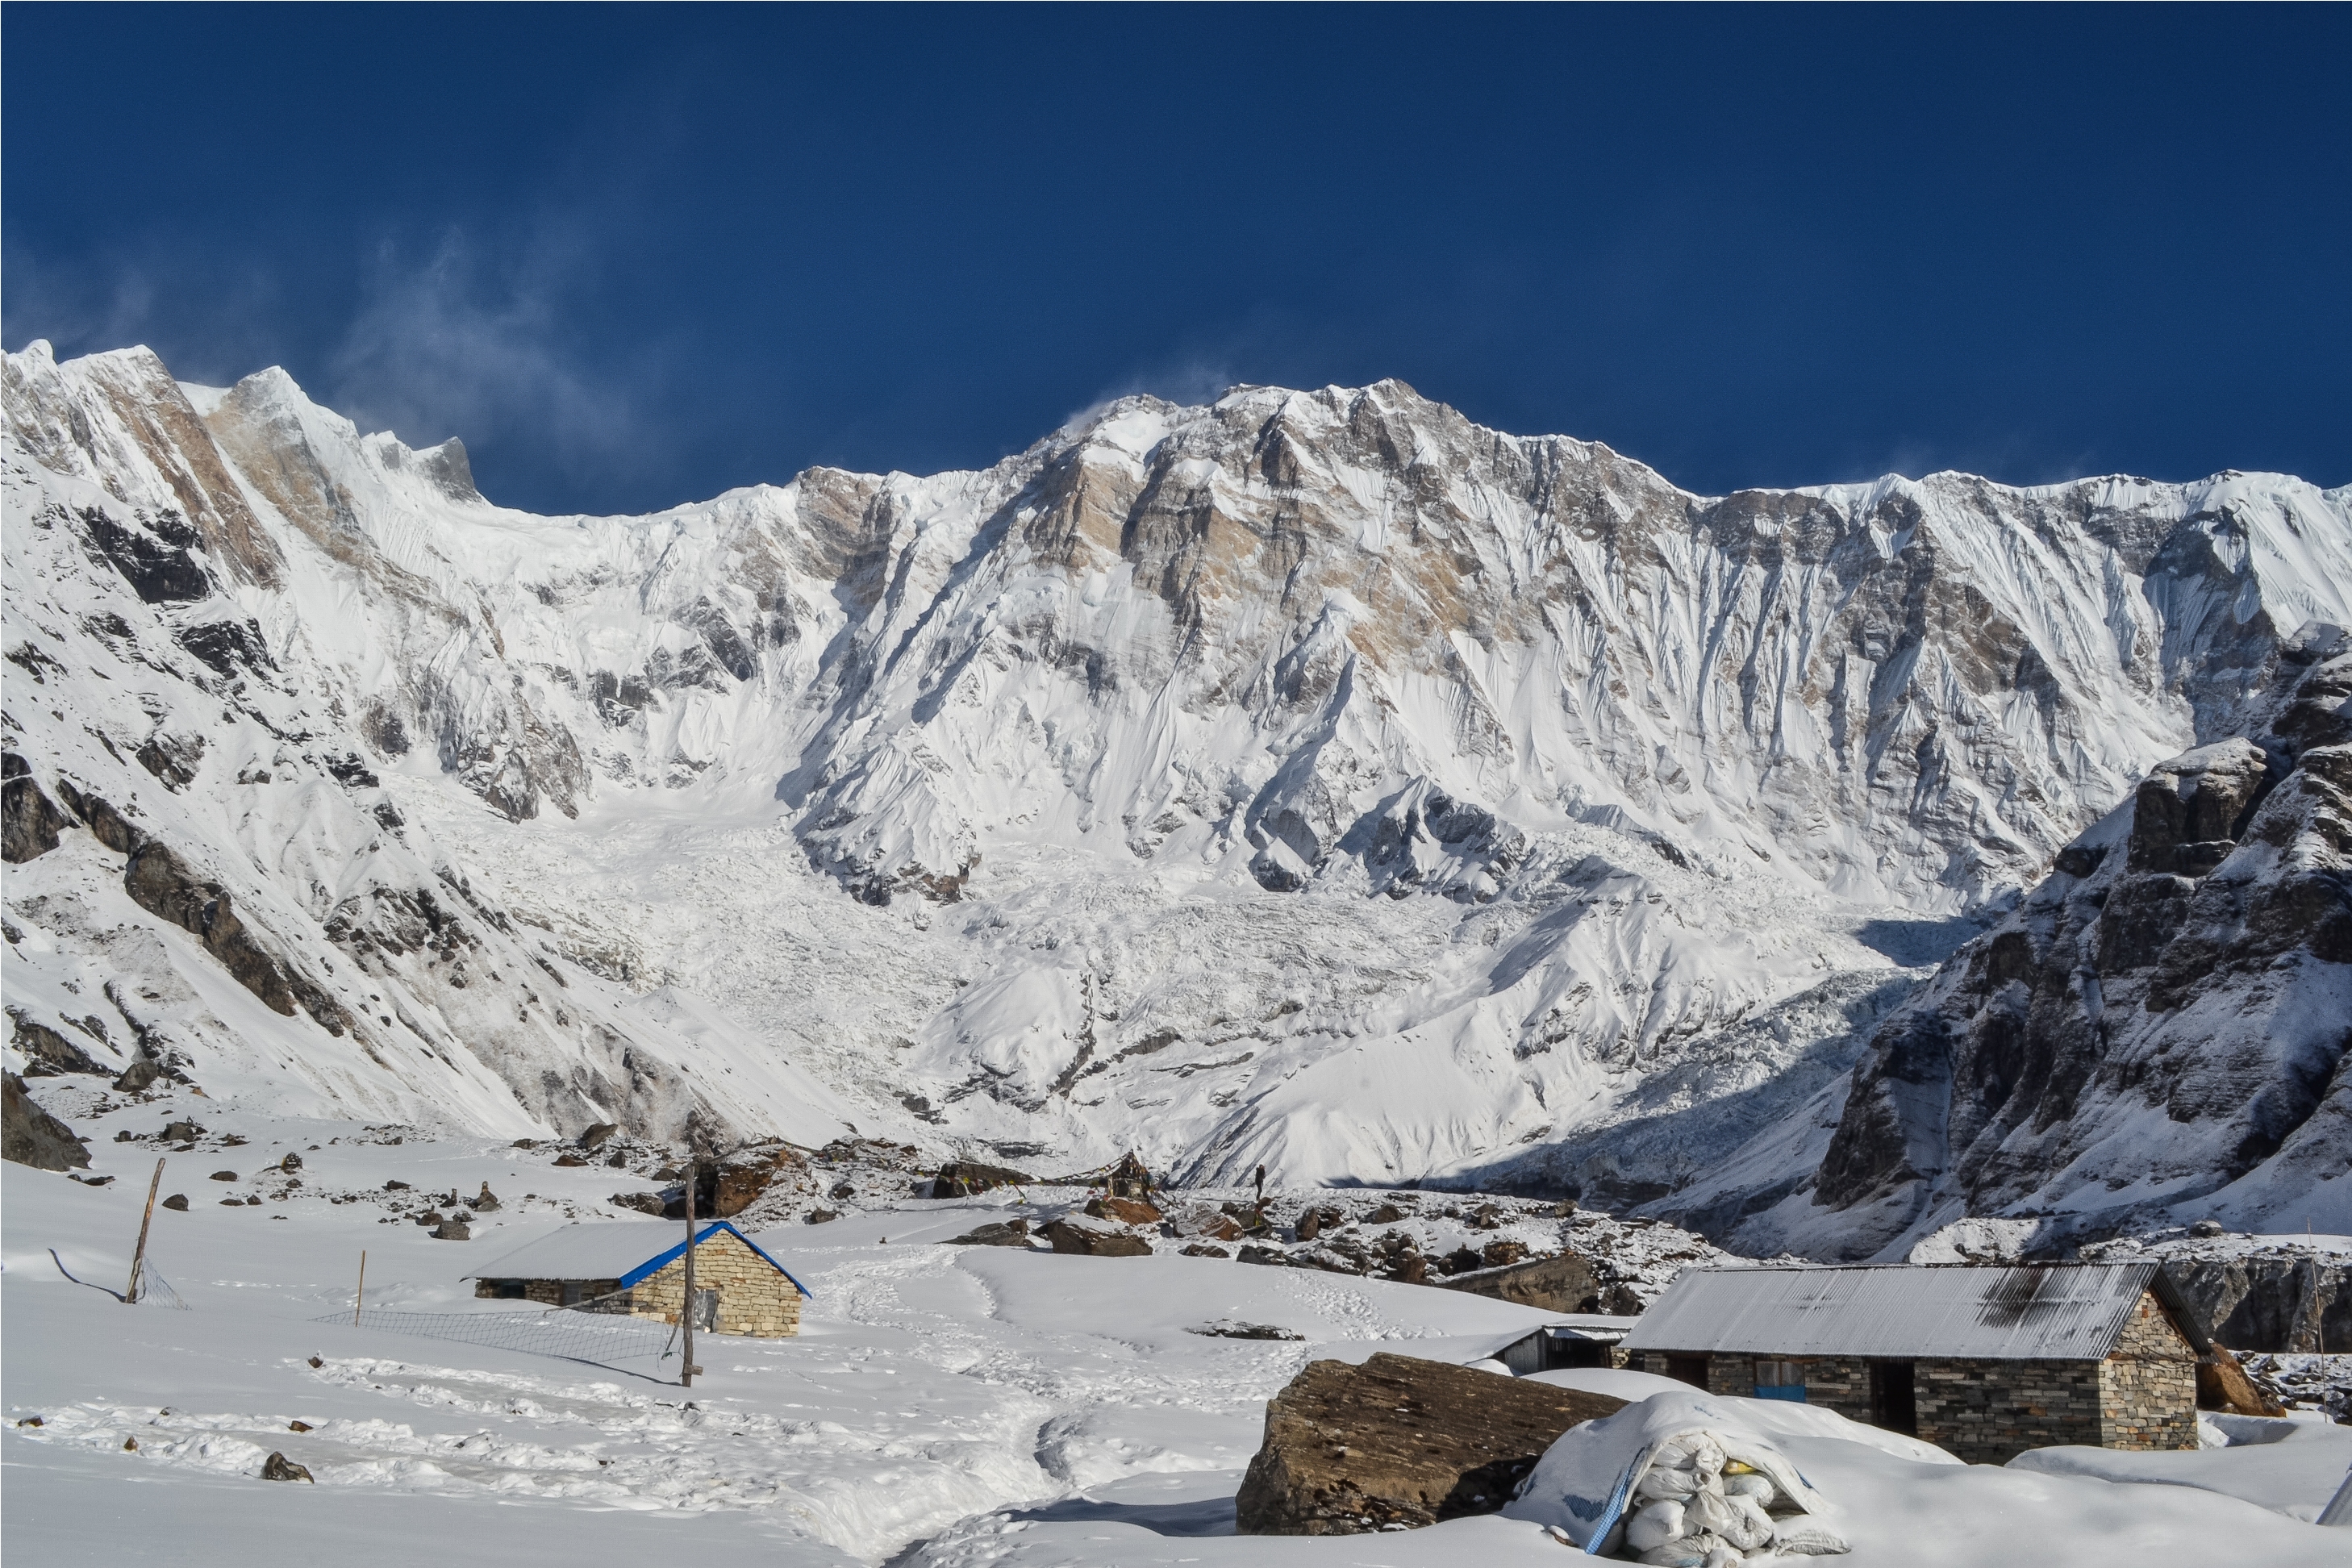 Annapurna Base Camp with snow